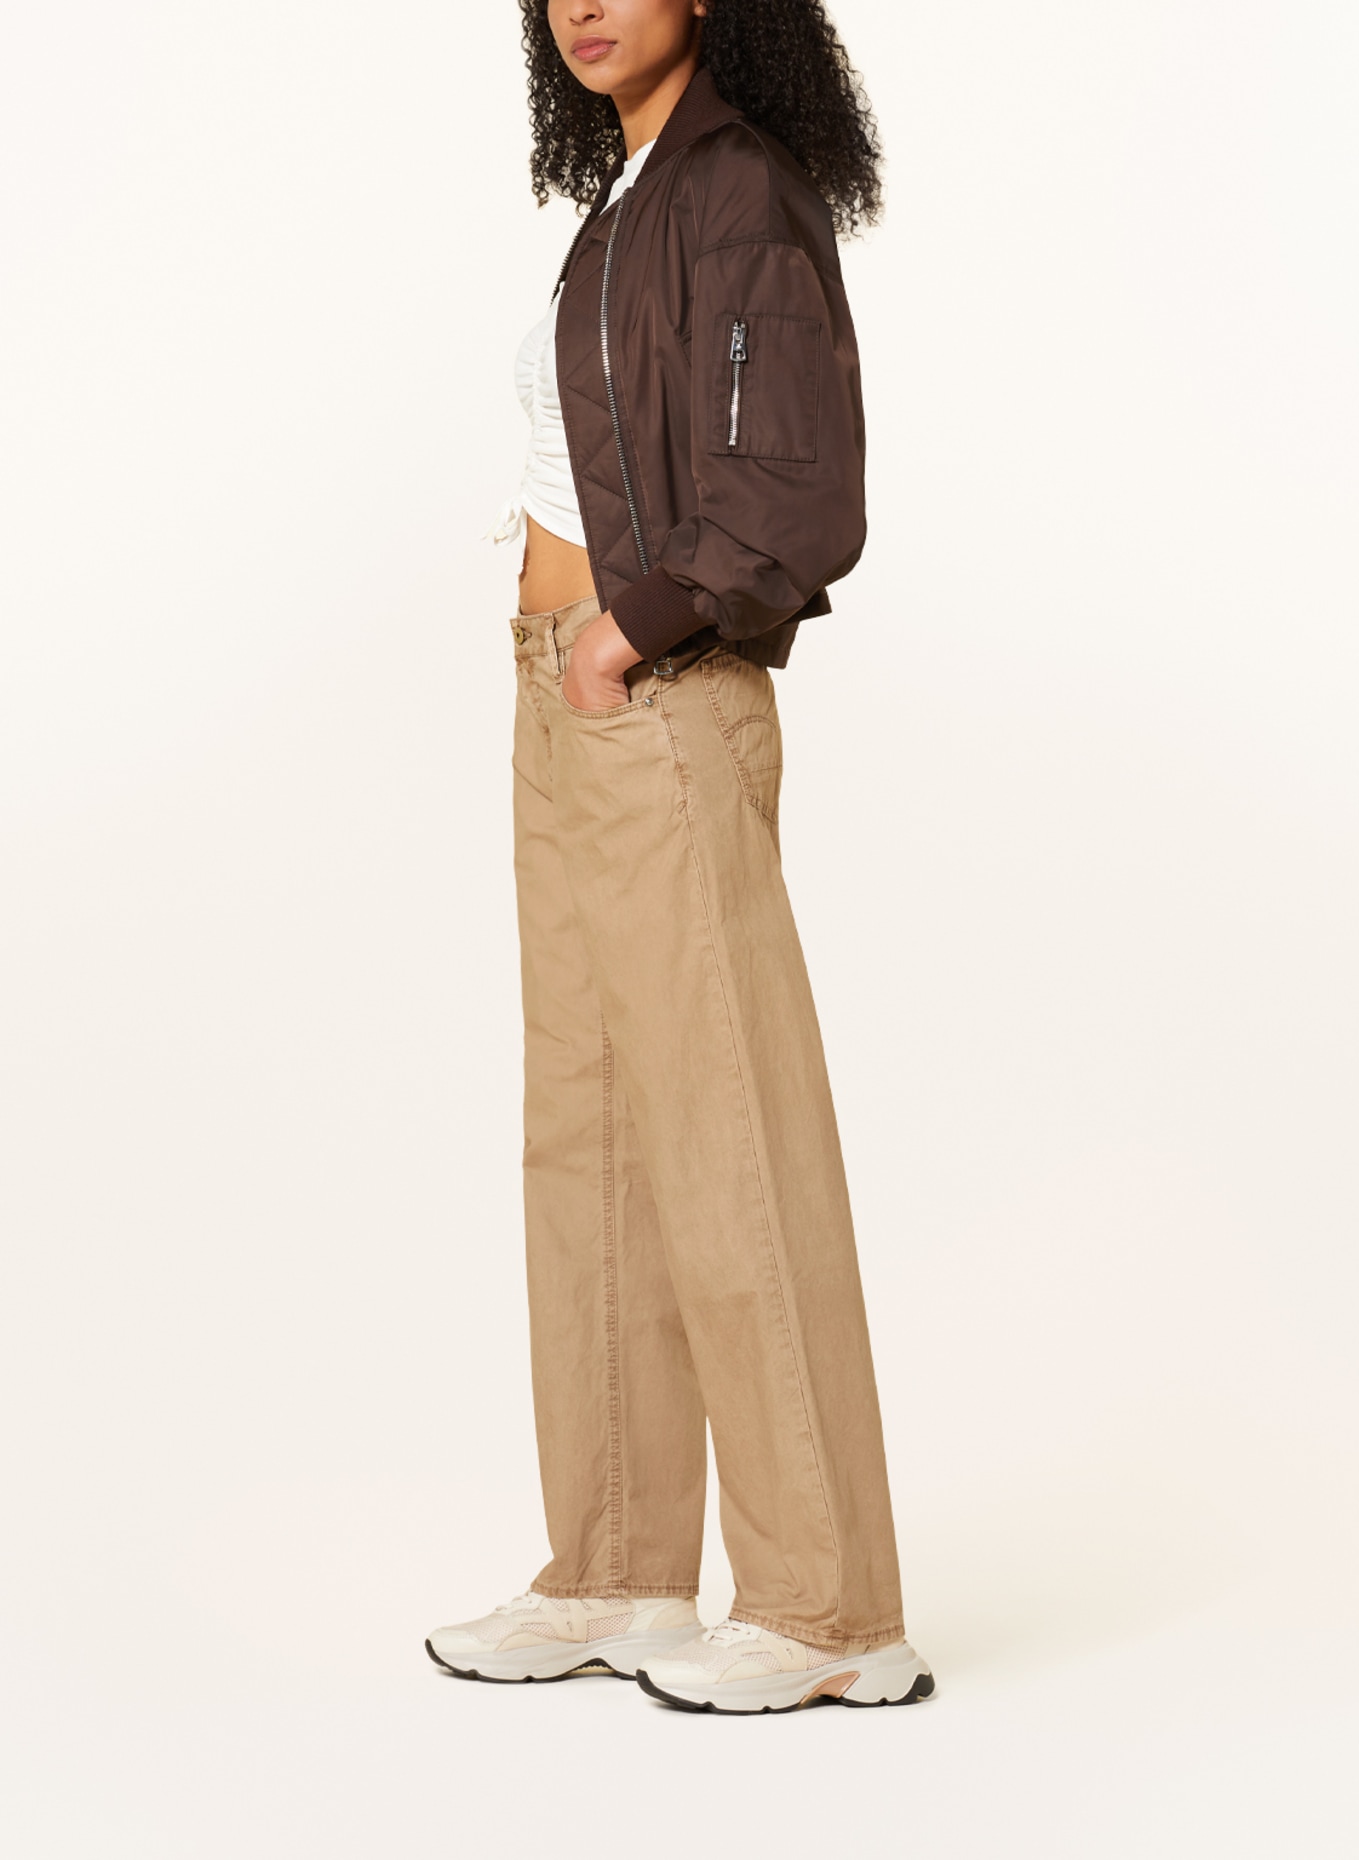 G STAR RAW ARC 3D Slim Fit Mens W31 L32 Tapered Leg Jeans Denim Pants  Trousers | eBay